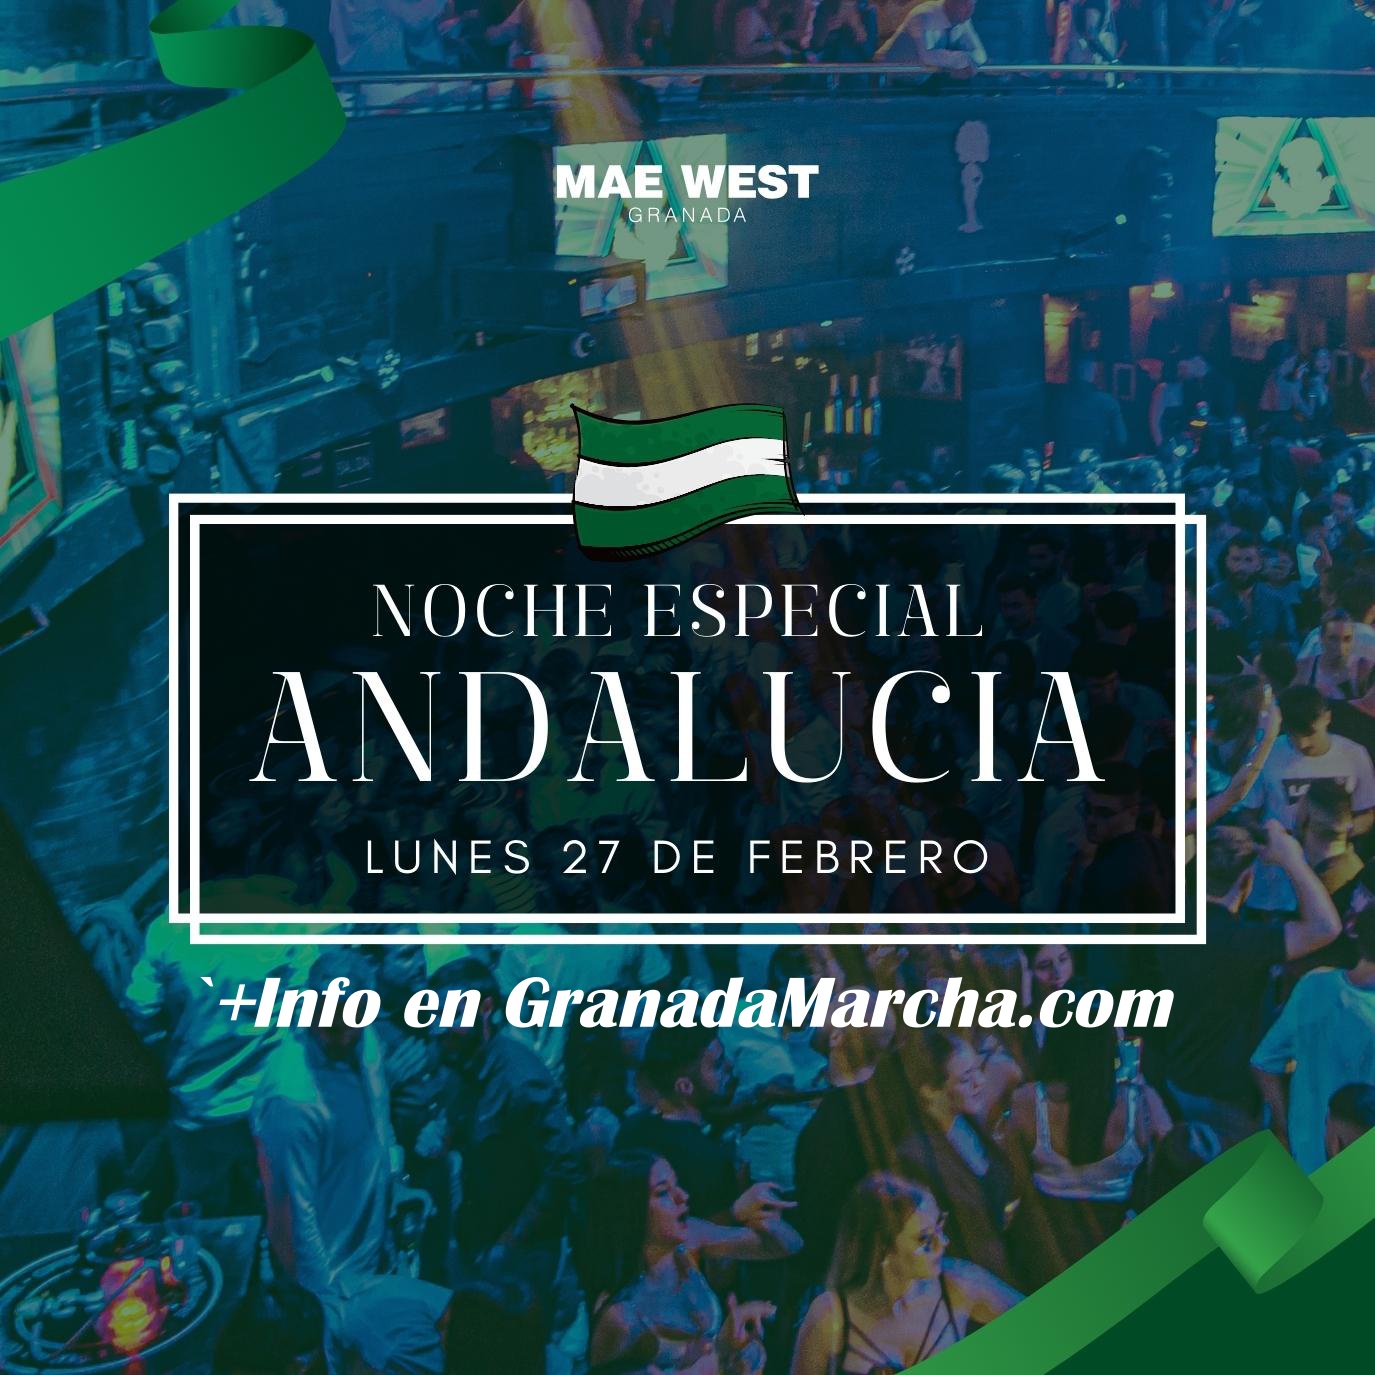 Noche especial día de Andalucía en Mae West Granada